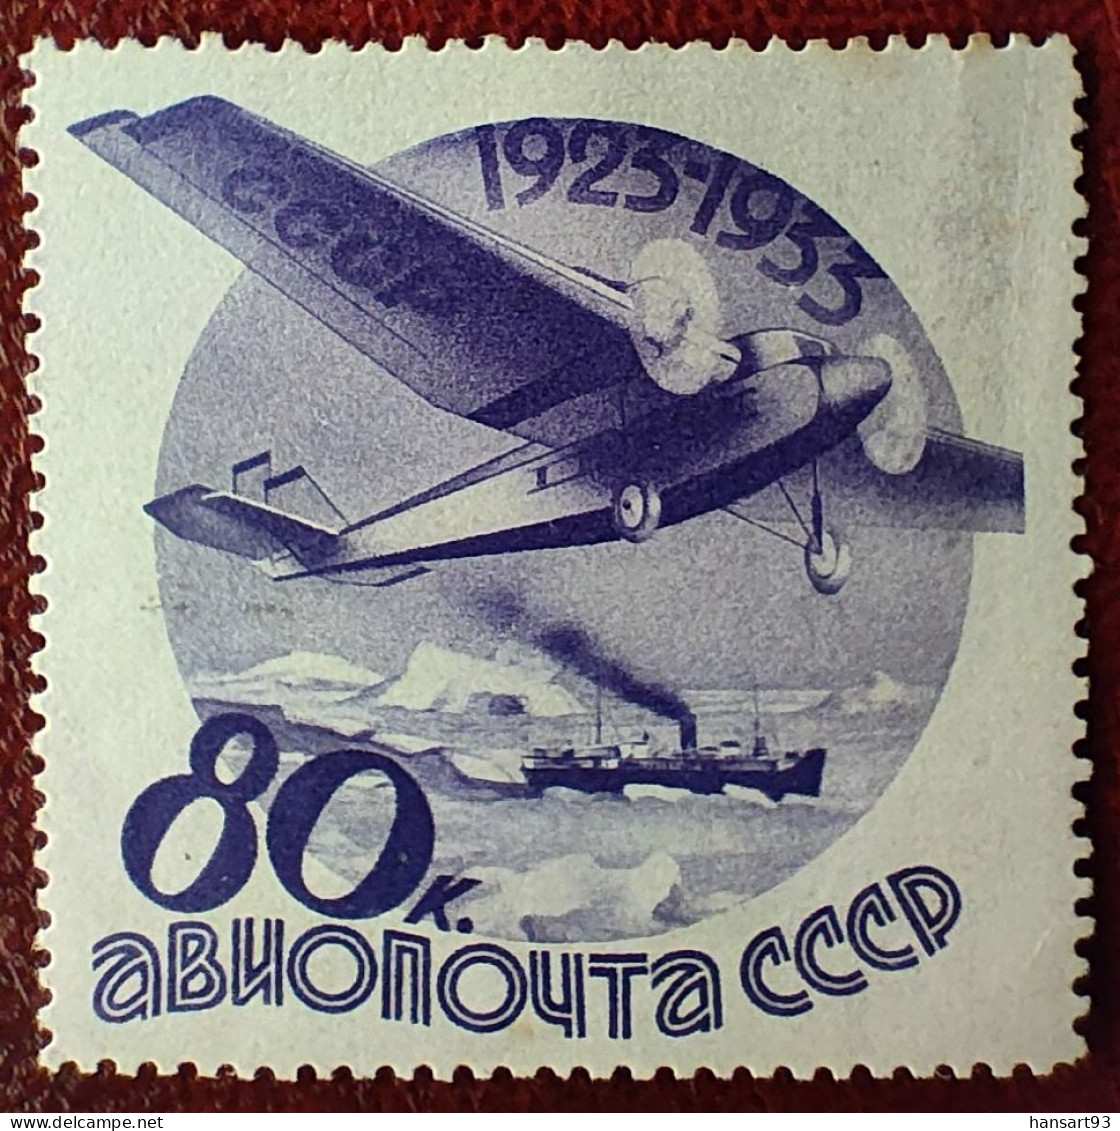 URSS Rare Poste Aérienne N° 45 N* TTB ! Cote 2020 : 50,00 Euros ! A Voir Absolument !! - Ungebraucht